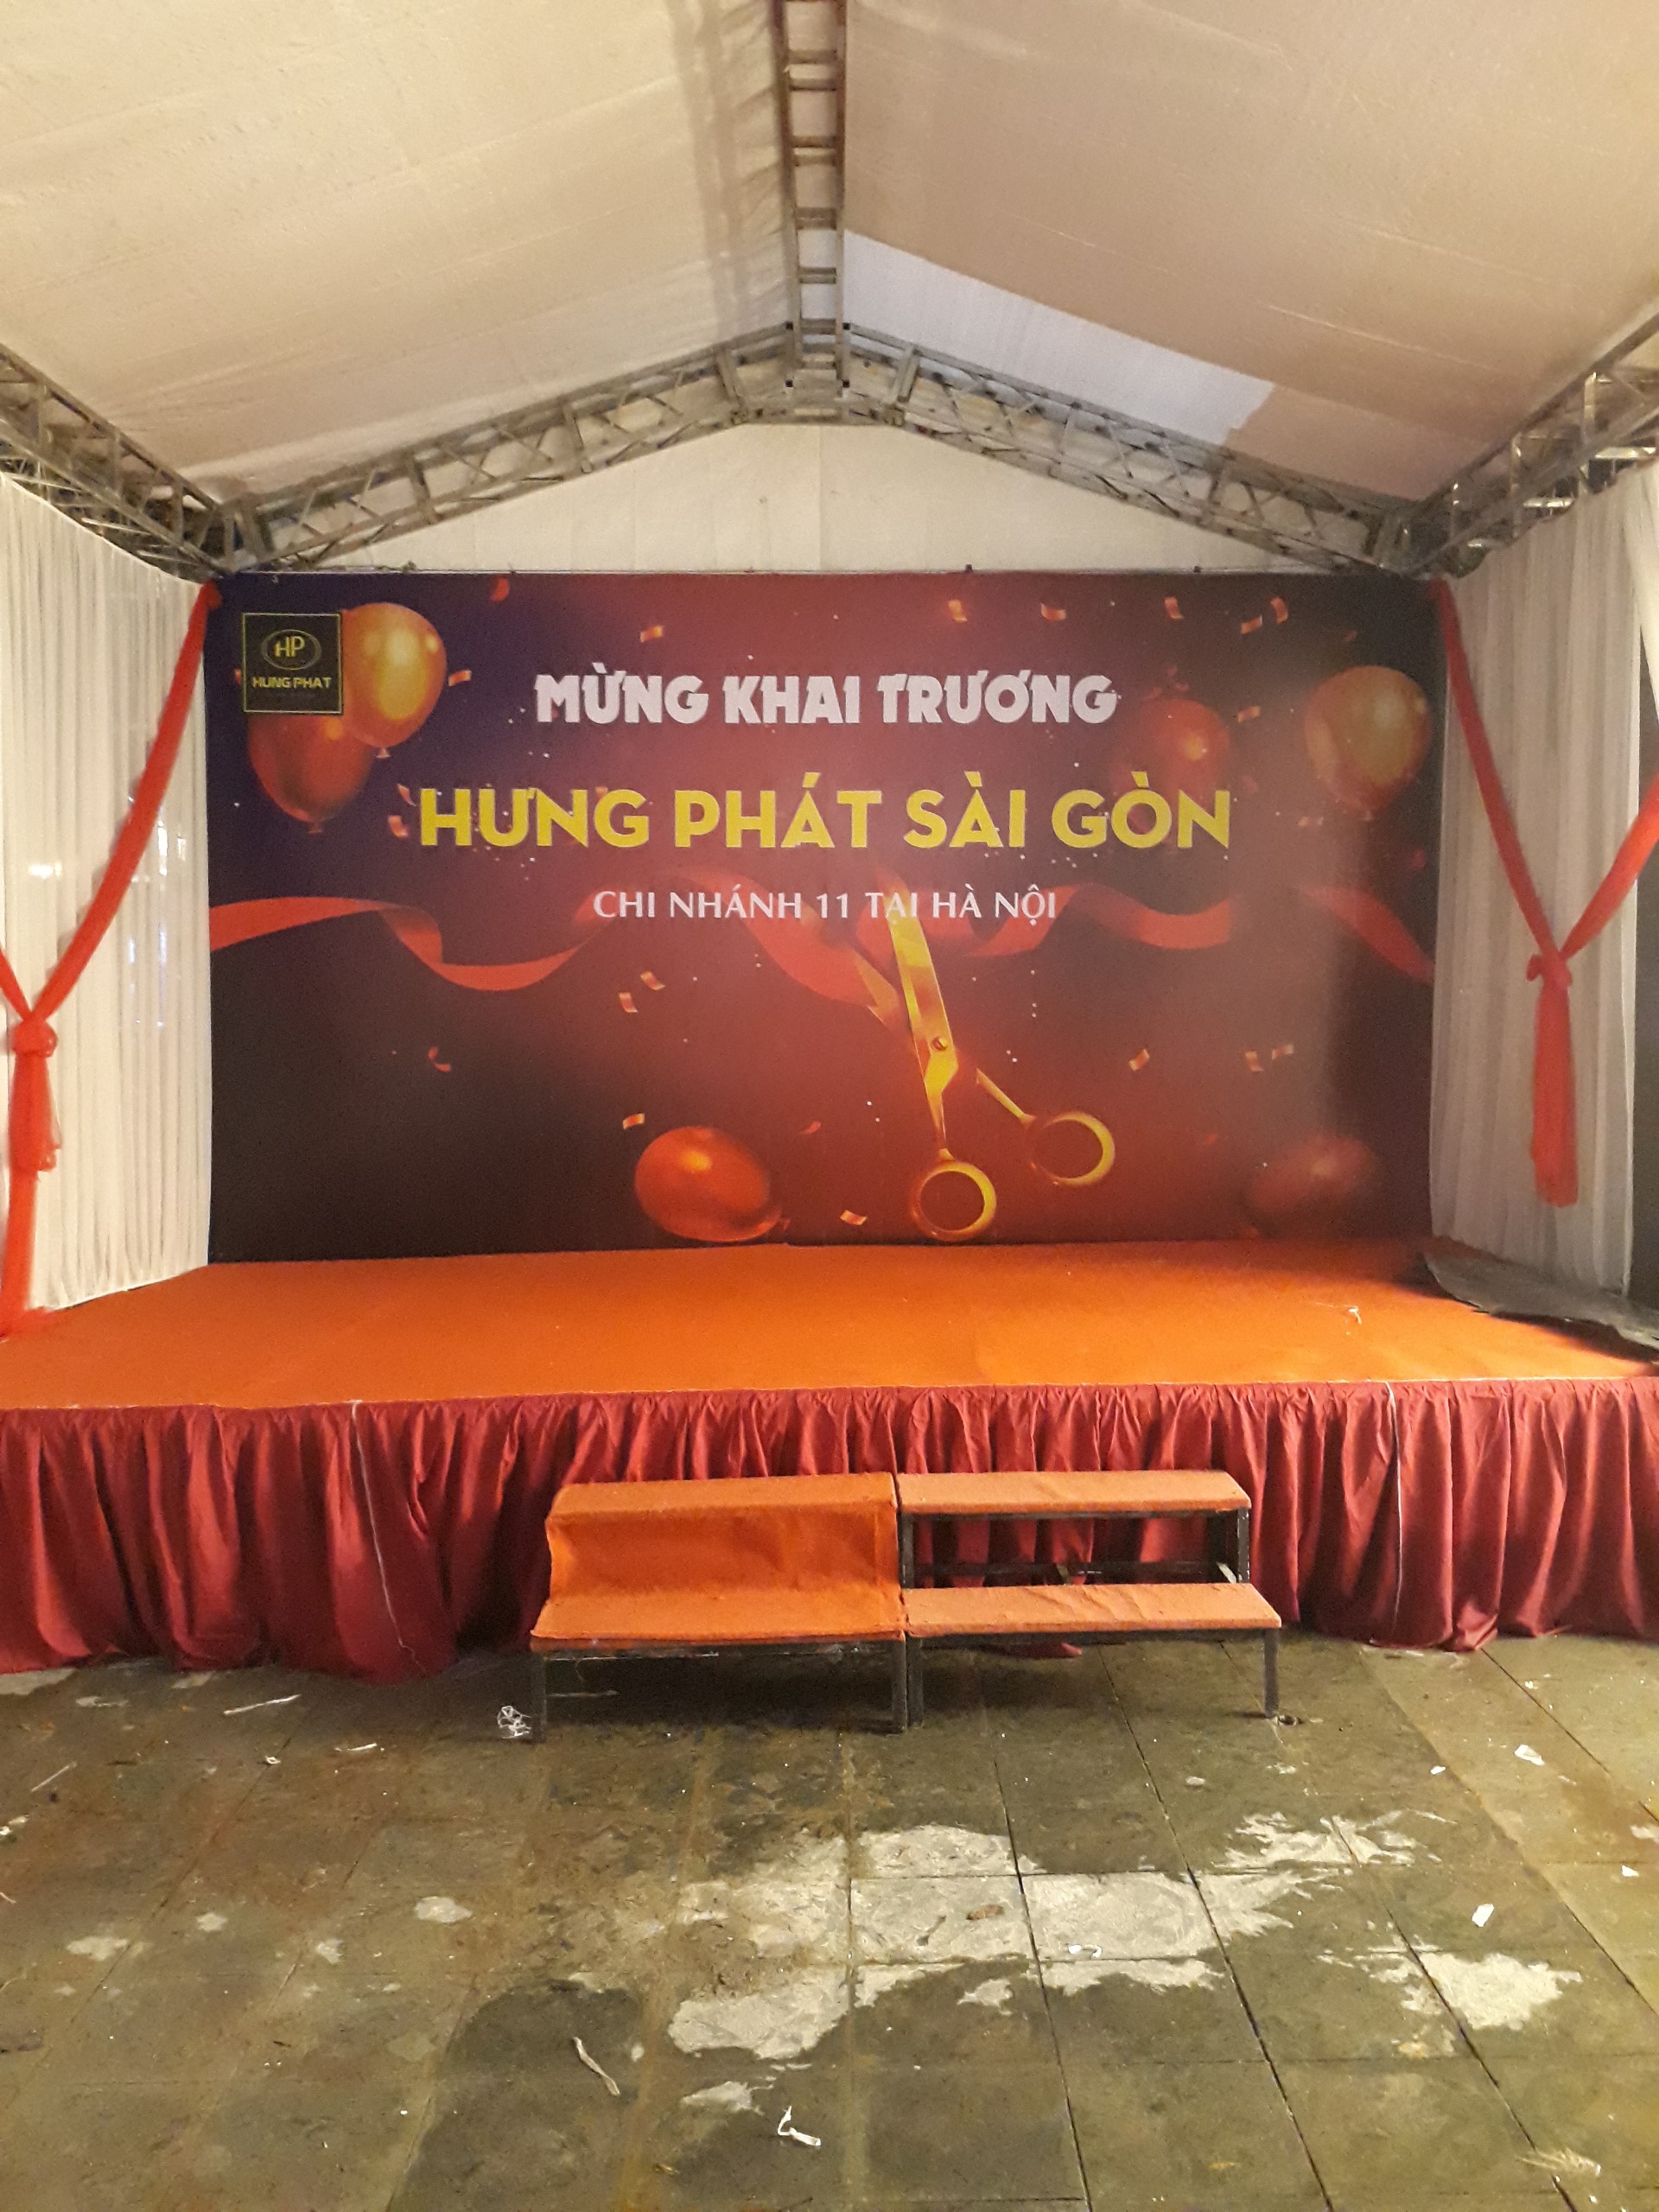 Cho thuê backdrop giá rẻ Hà Nội